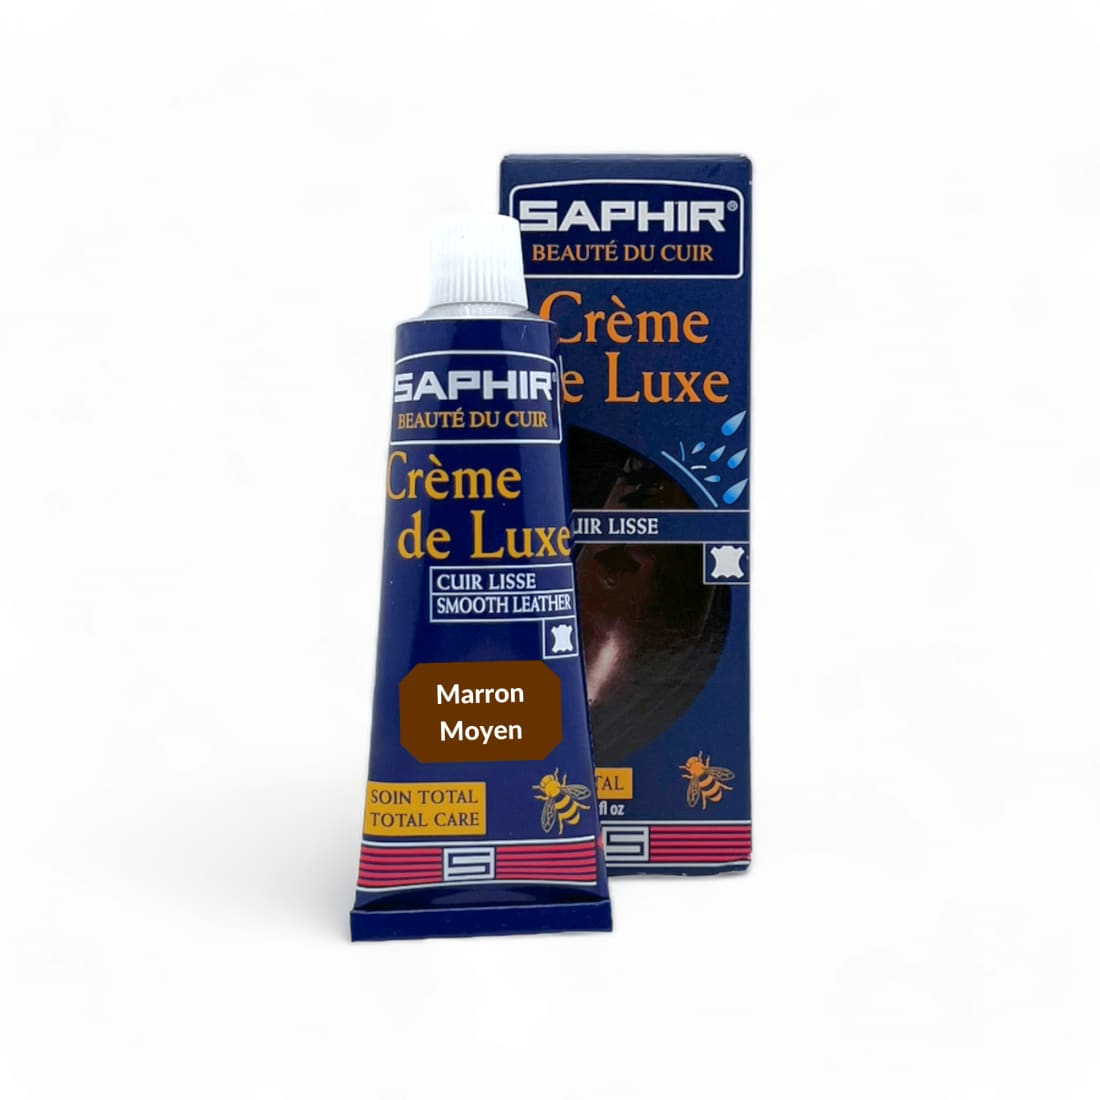 Cirage Crème de luxe Marron Moyen - Saphir - Accessoires